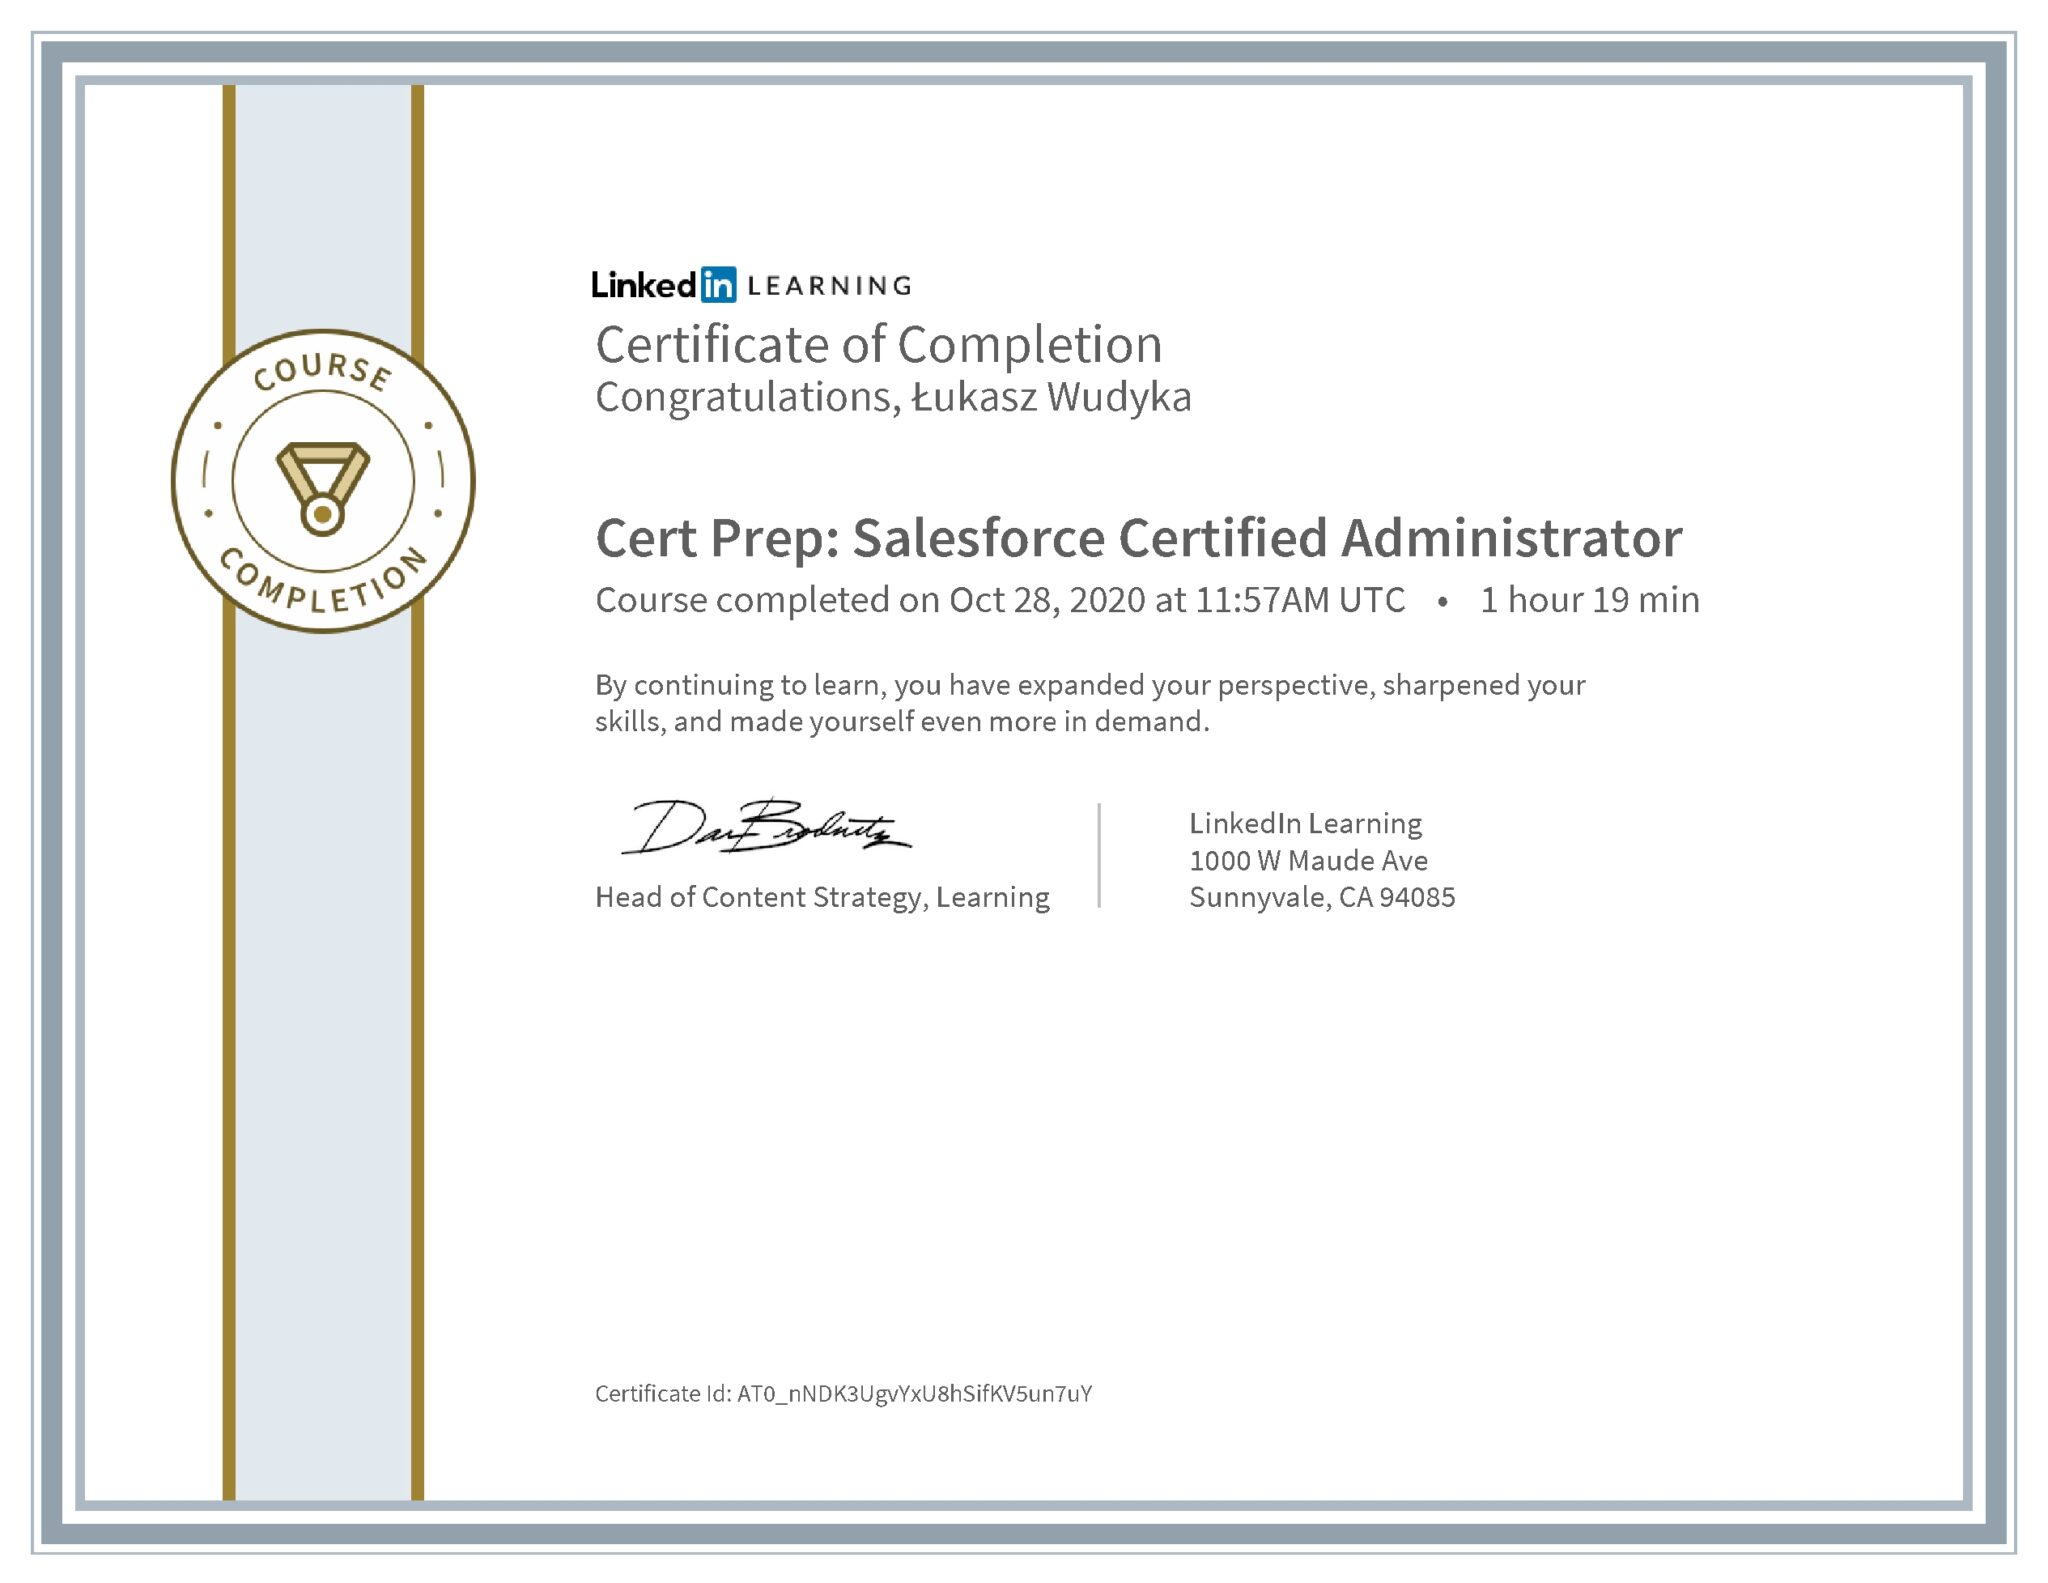 Łukasz Wudyka certyfikat LinkedIn Cert Prep: Salesforce Certified Administrator